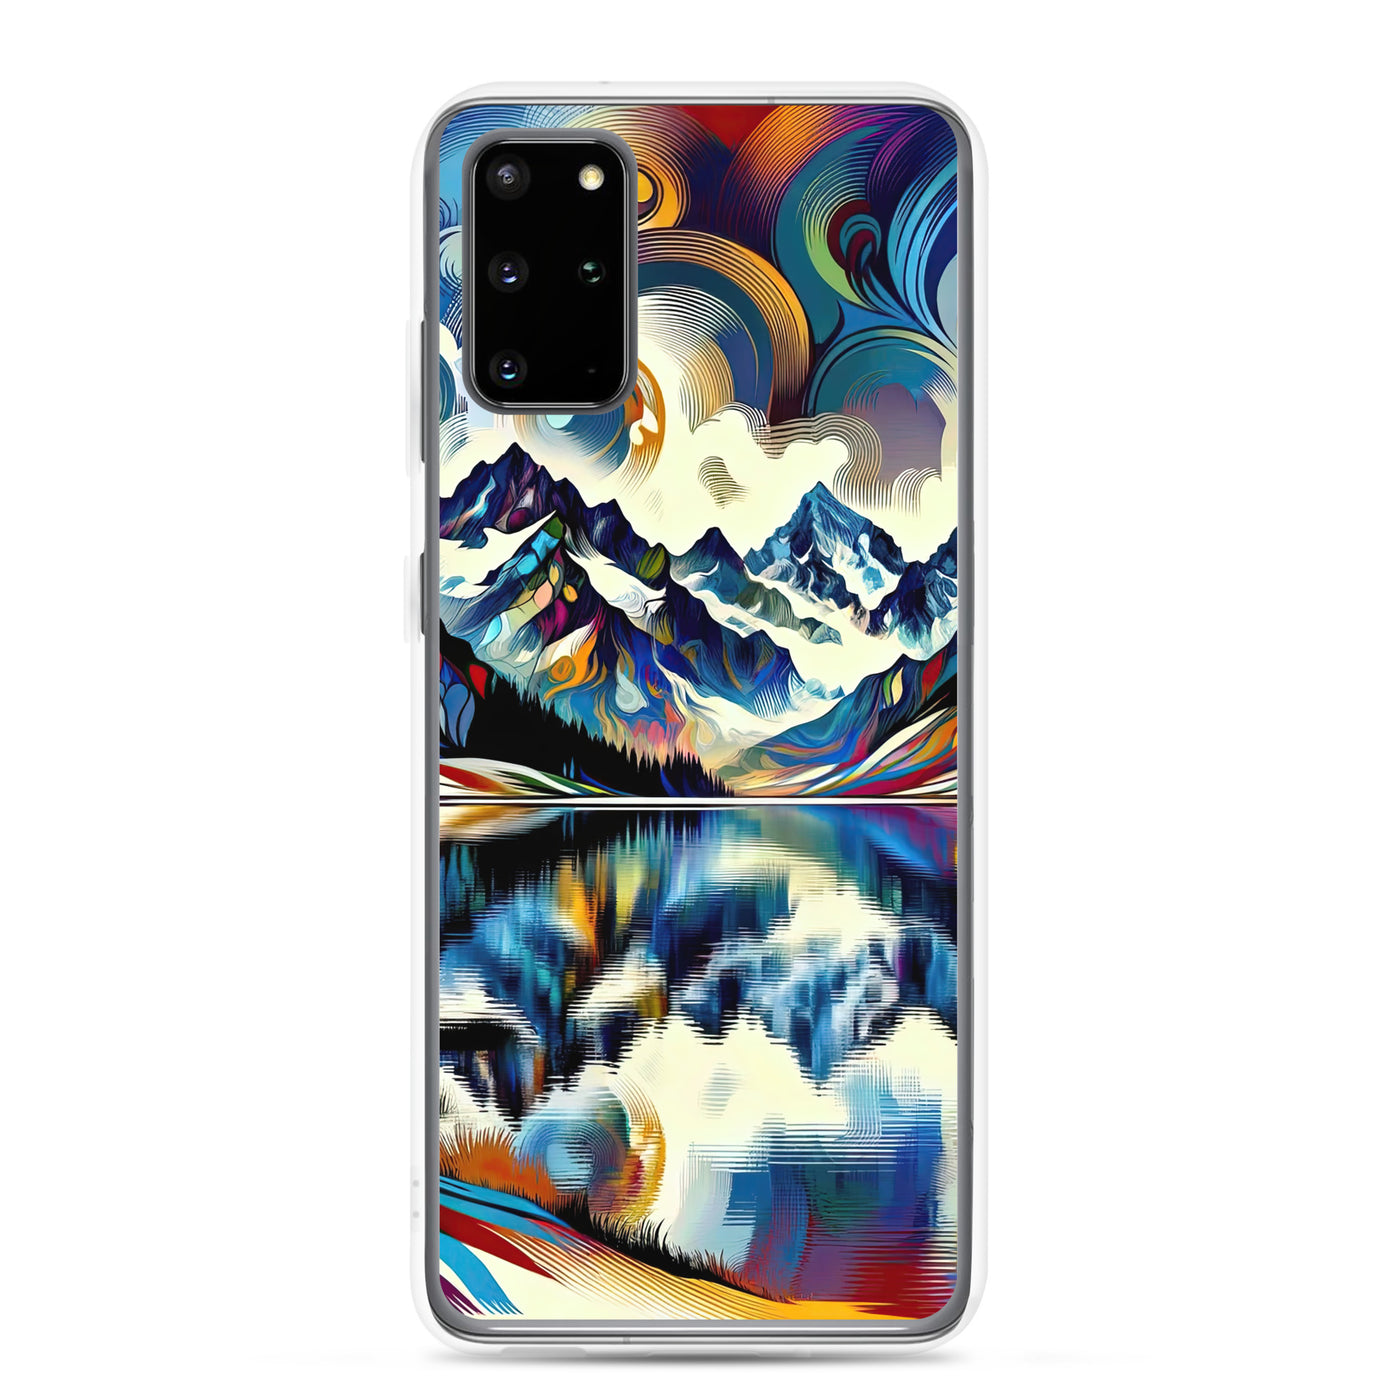 Alpensee im Zentrum eines abstrakt-expressionistischen Alpen-Kunstwerks - Samsung Schutzhülle (durchsichtig) berge xxx yyy zzz Samsung Galaxy S20 Plus